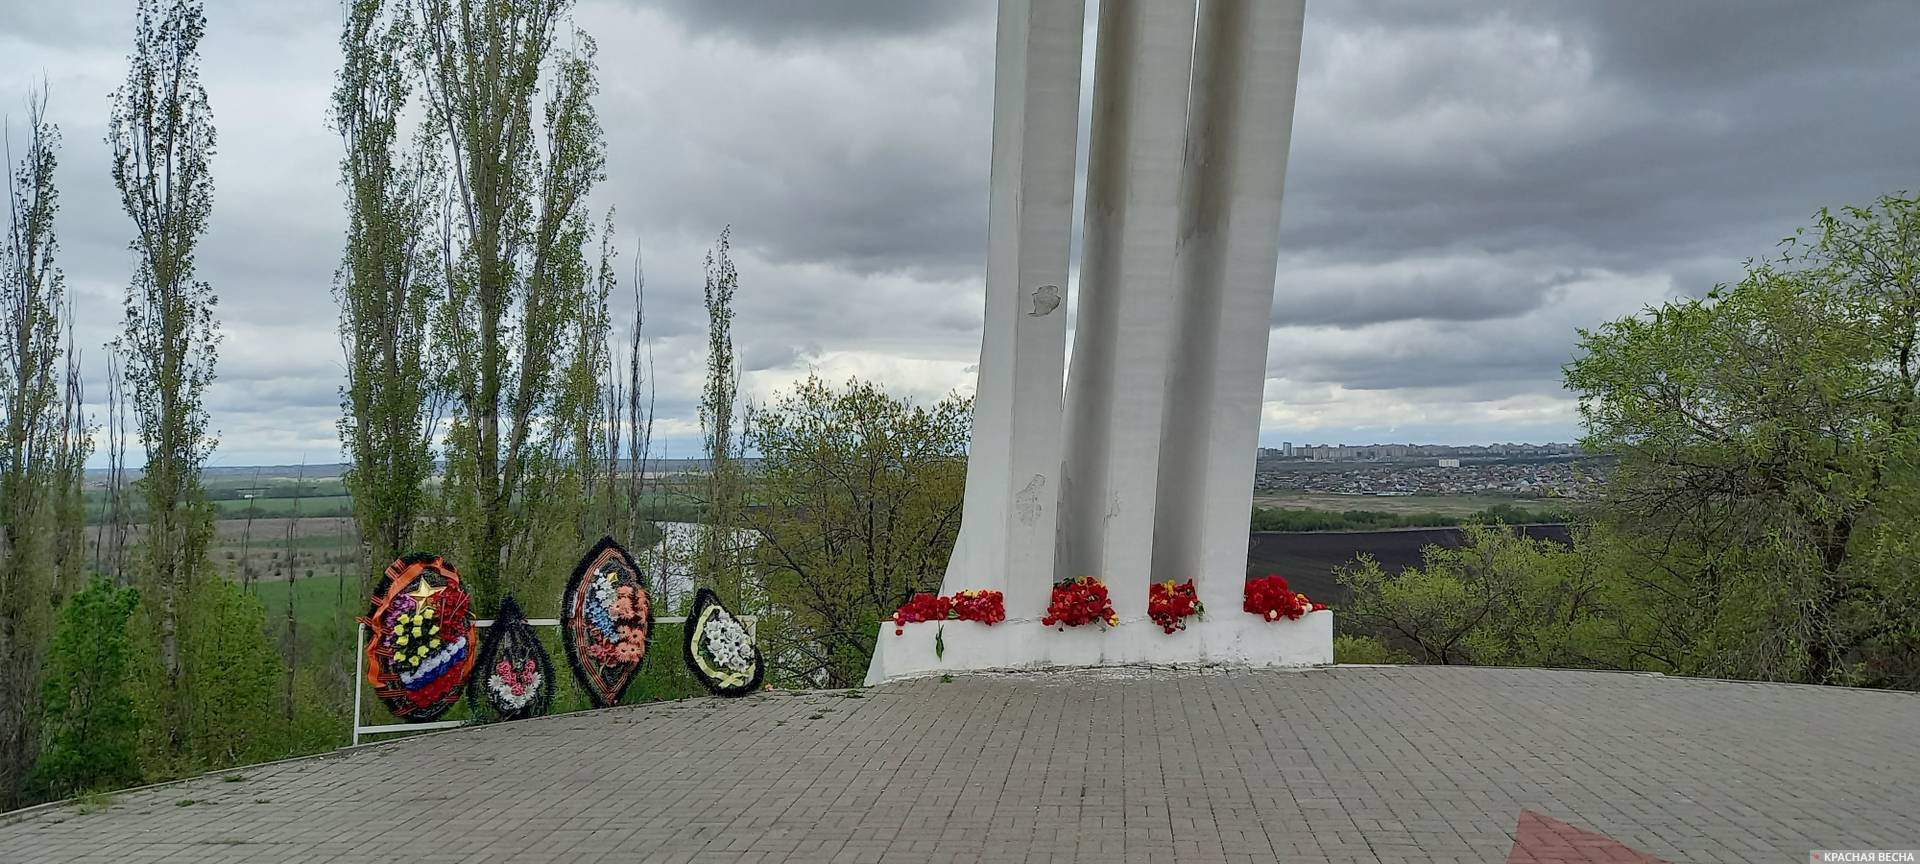 Цветы, которые возложили жители Семилук к памятнику 2-ой воздушной армии, 9 мая 2021 года